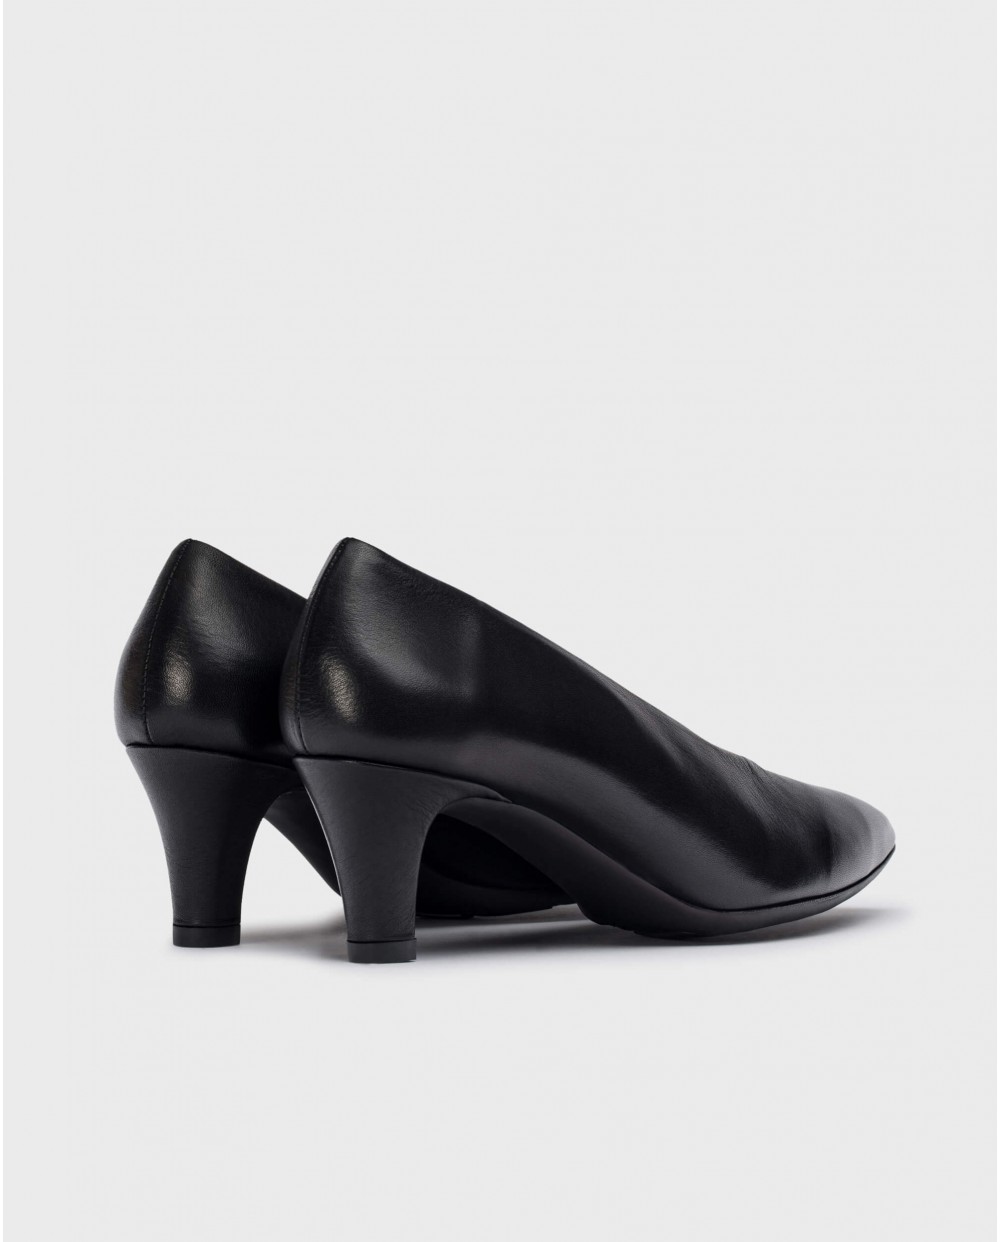 Wonders-Heels-Black Trui heeled shoes